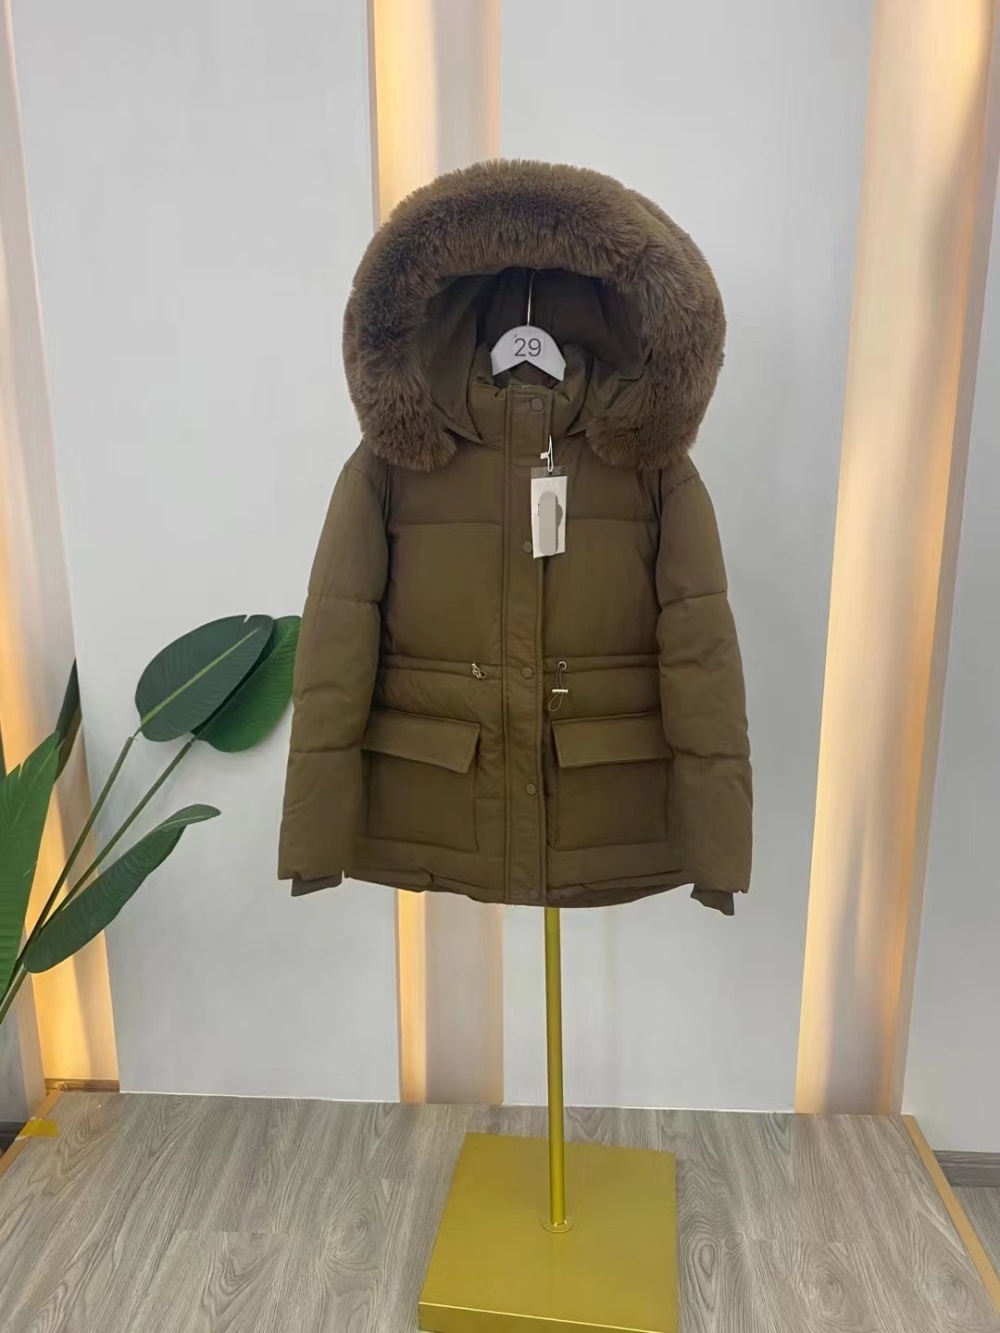 Korean style long winter down coat for women